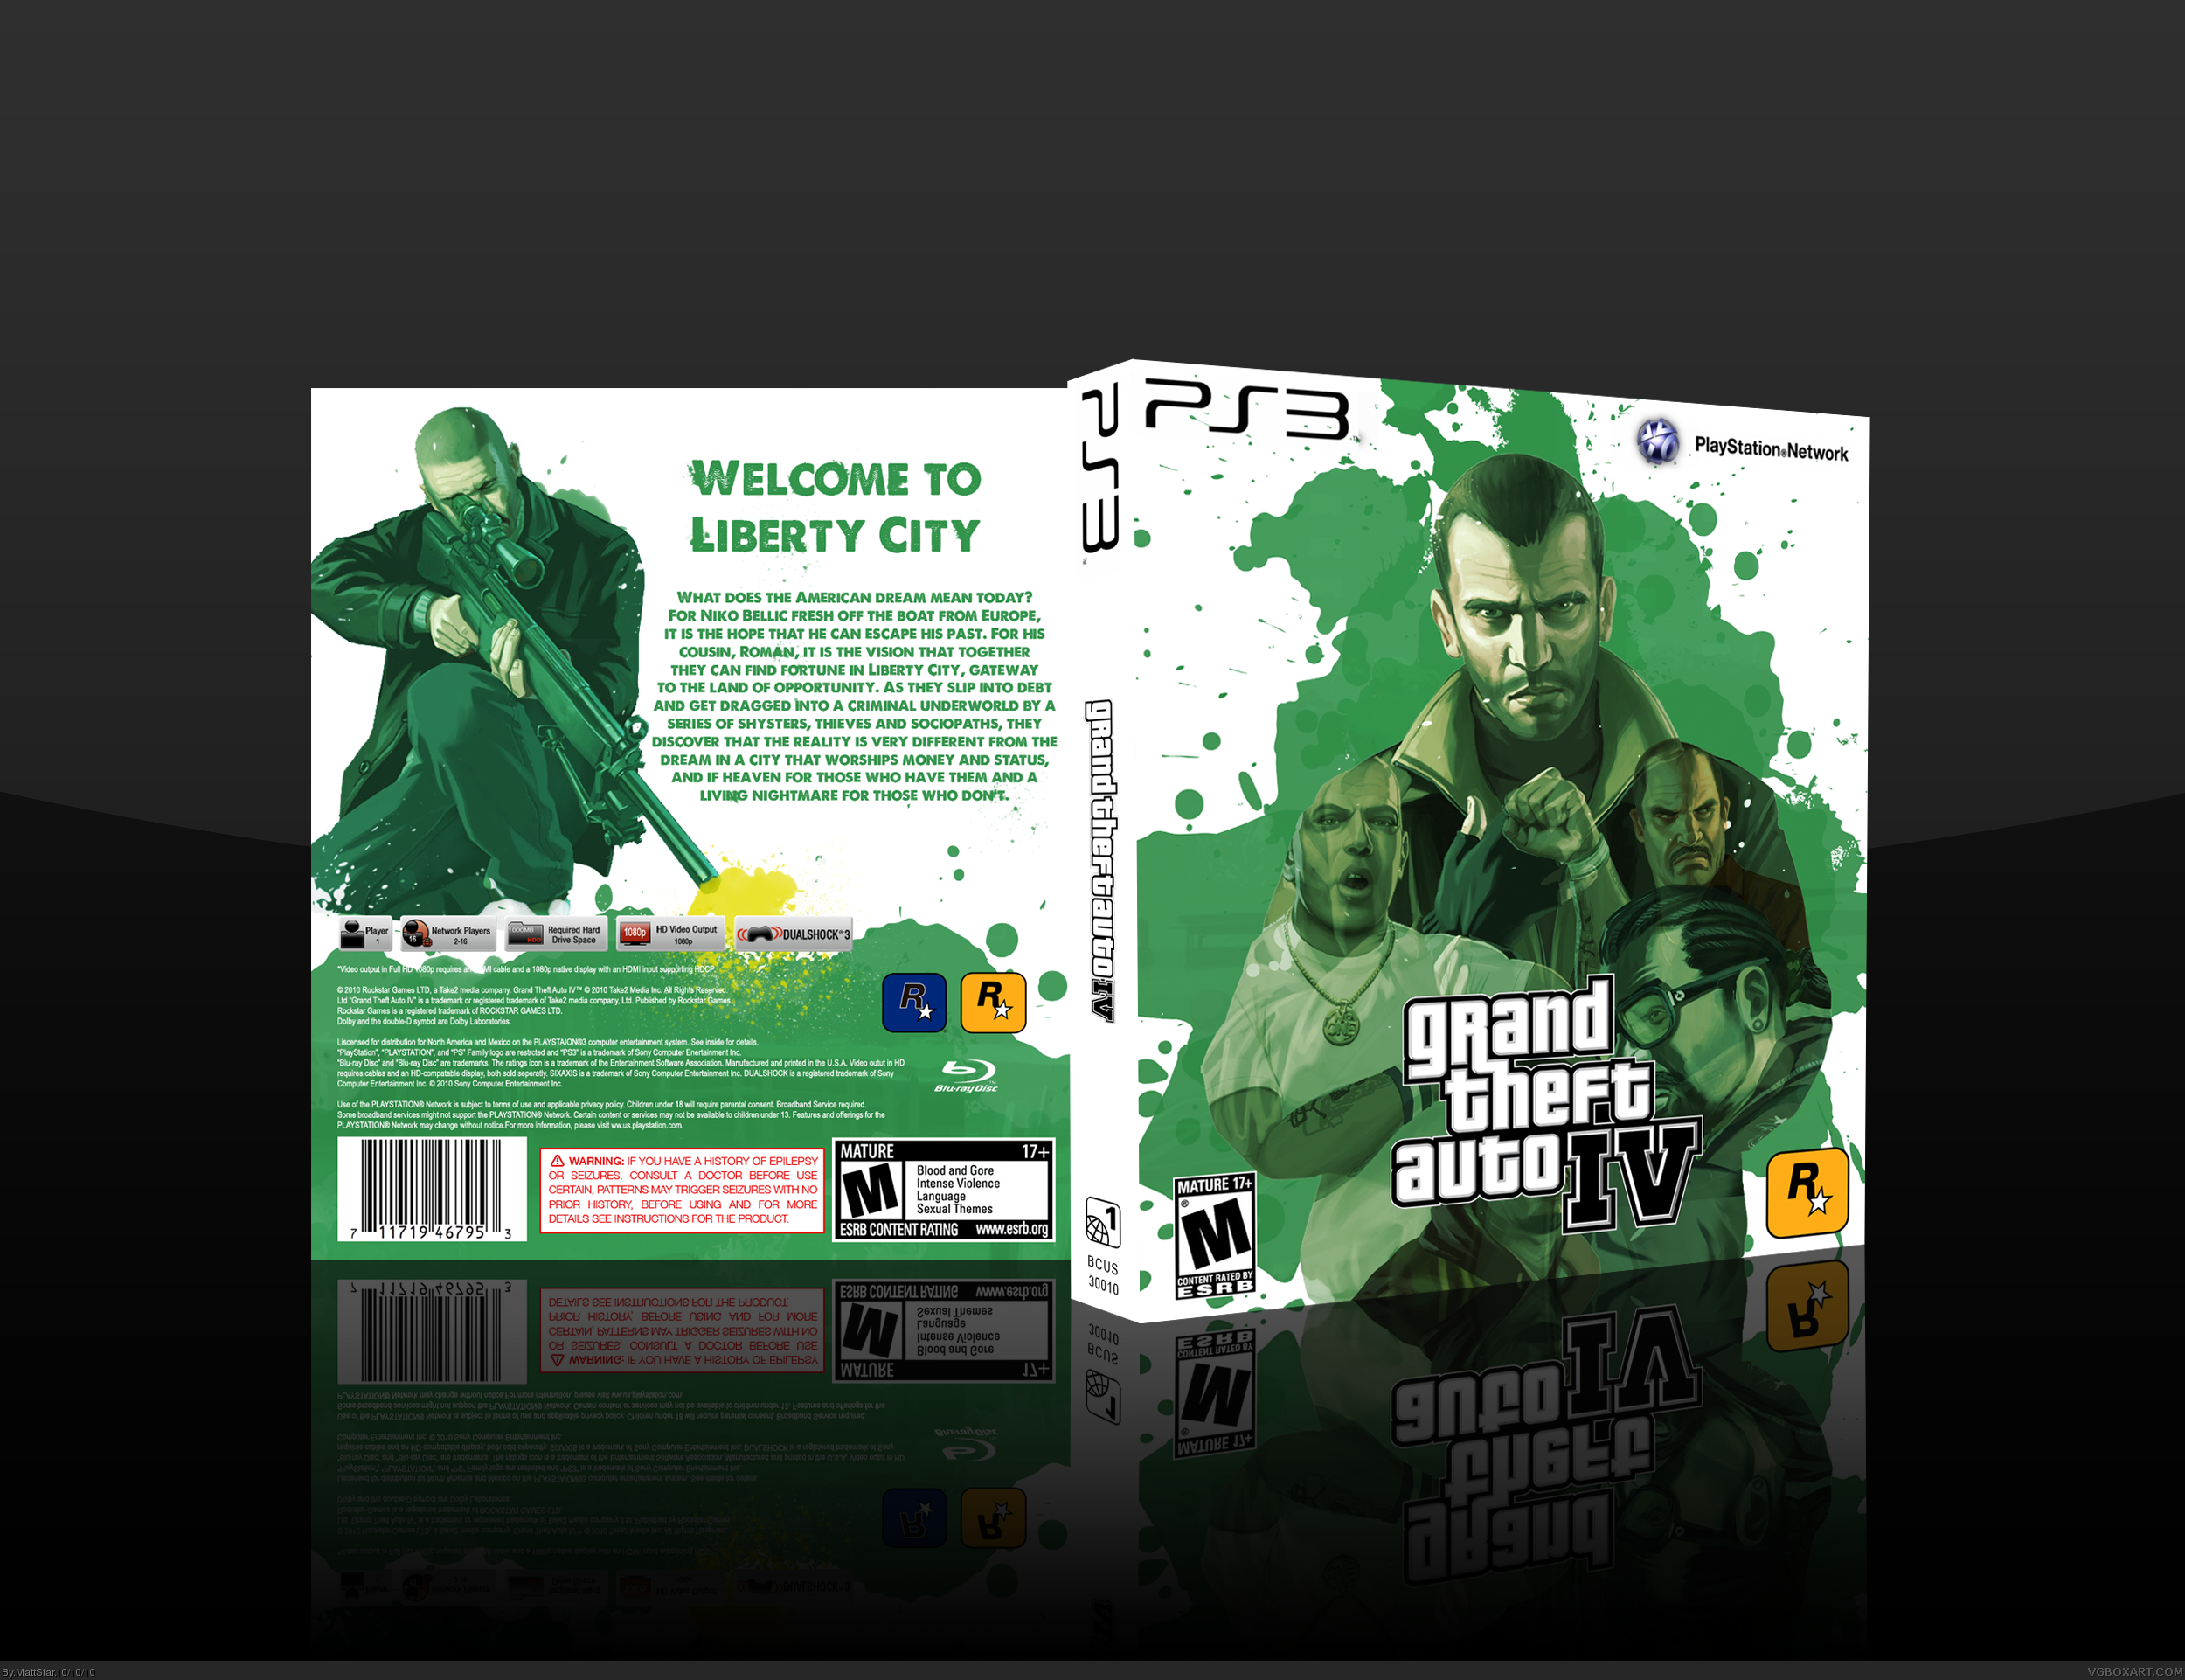 Grand Theft Auto IV box cover